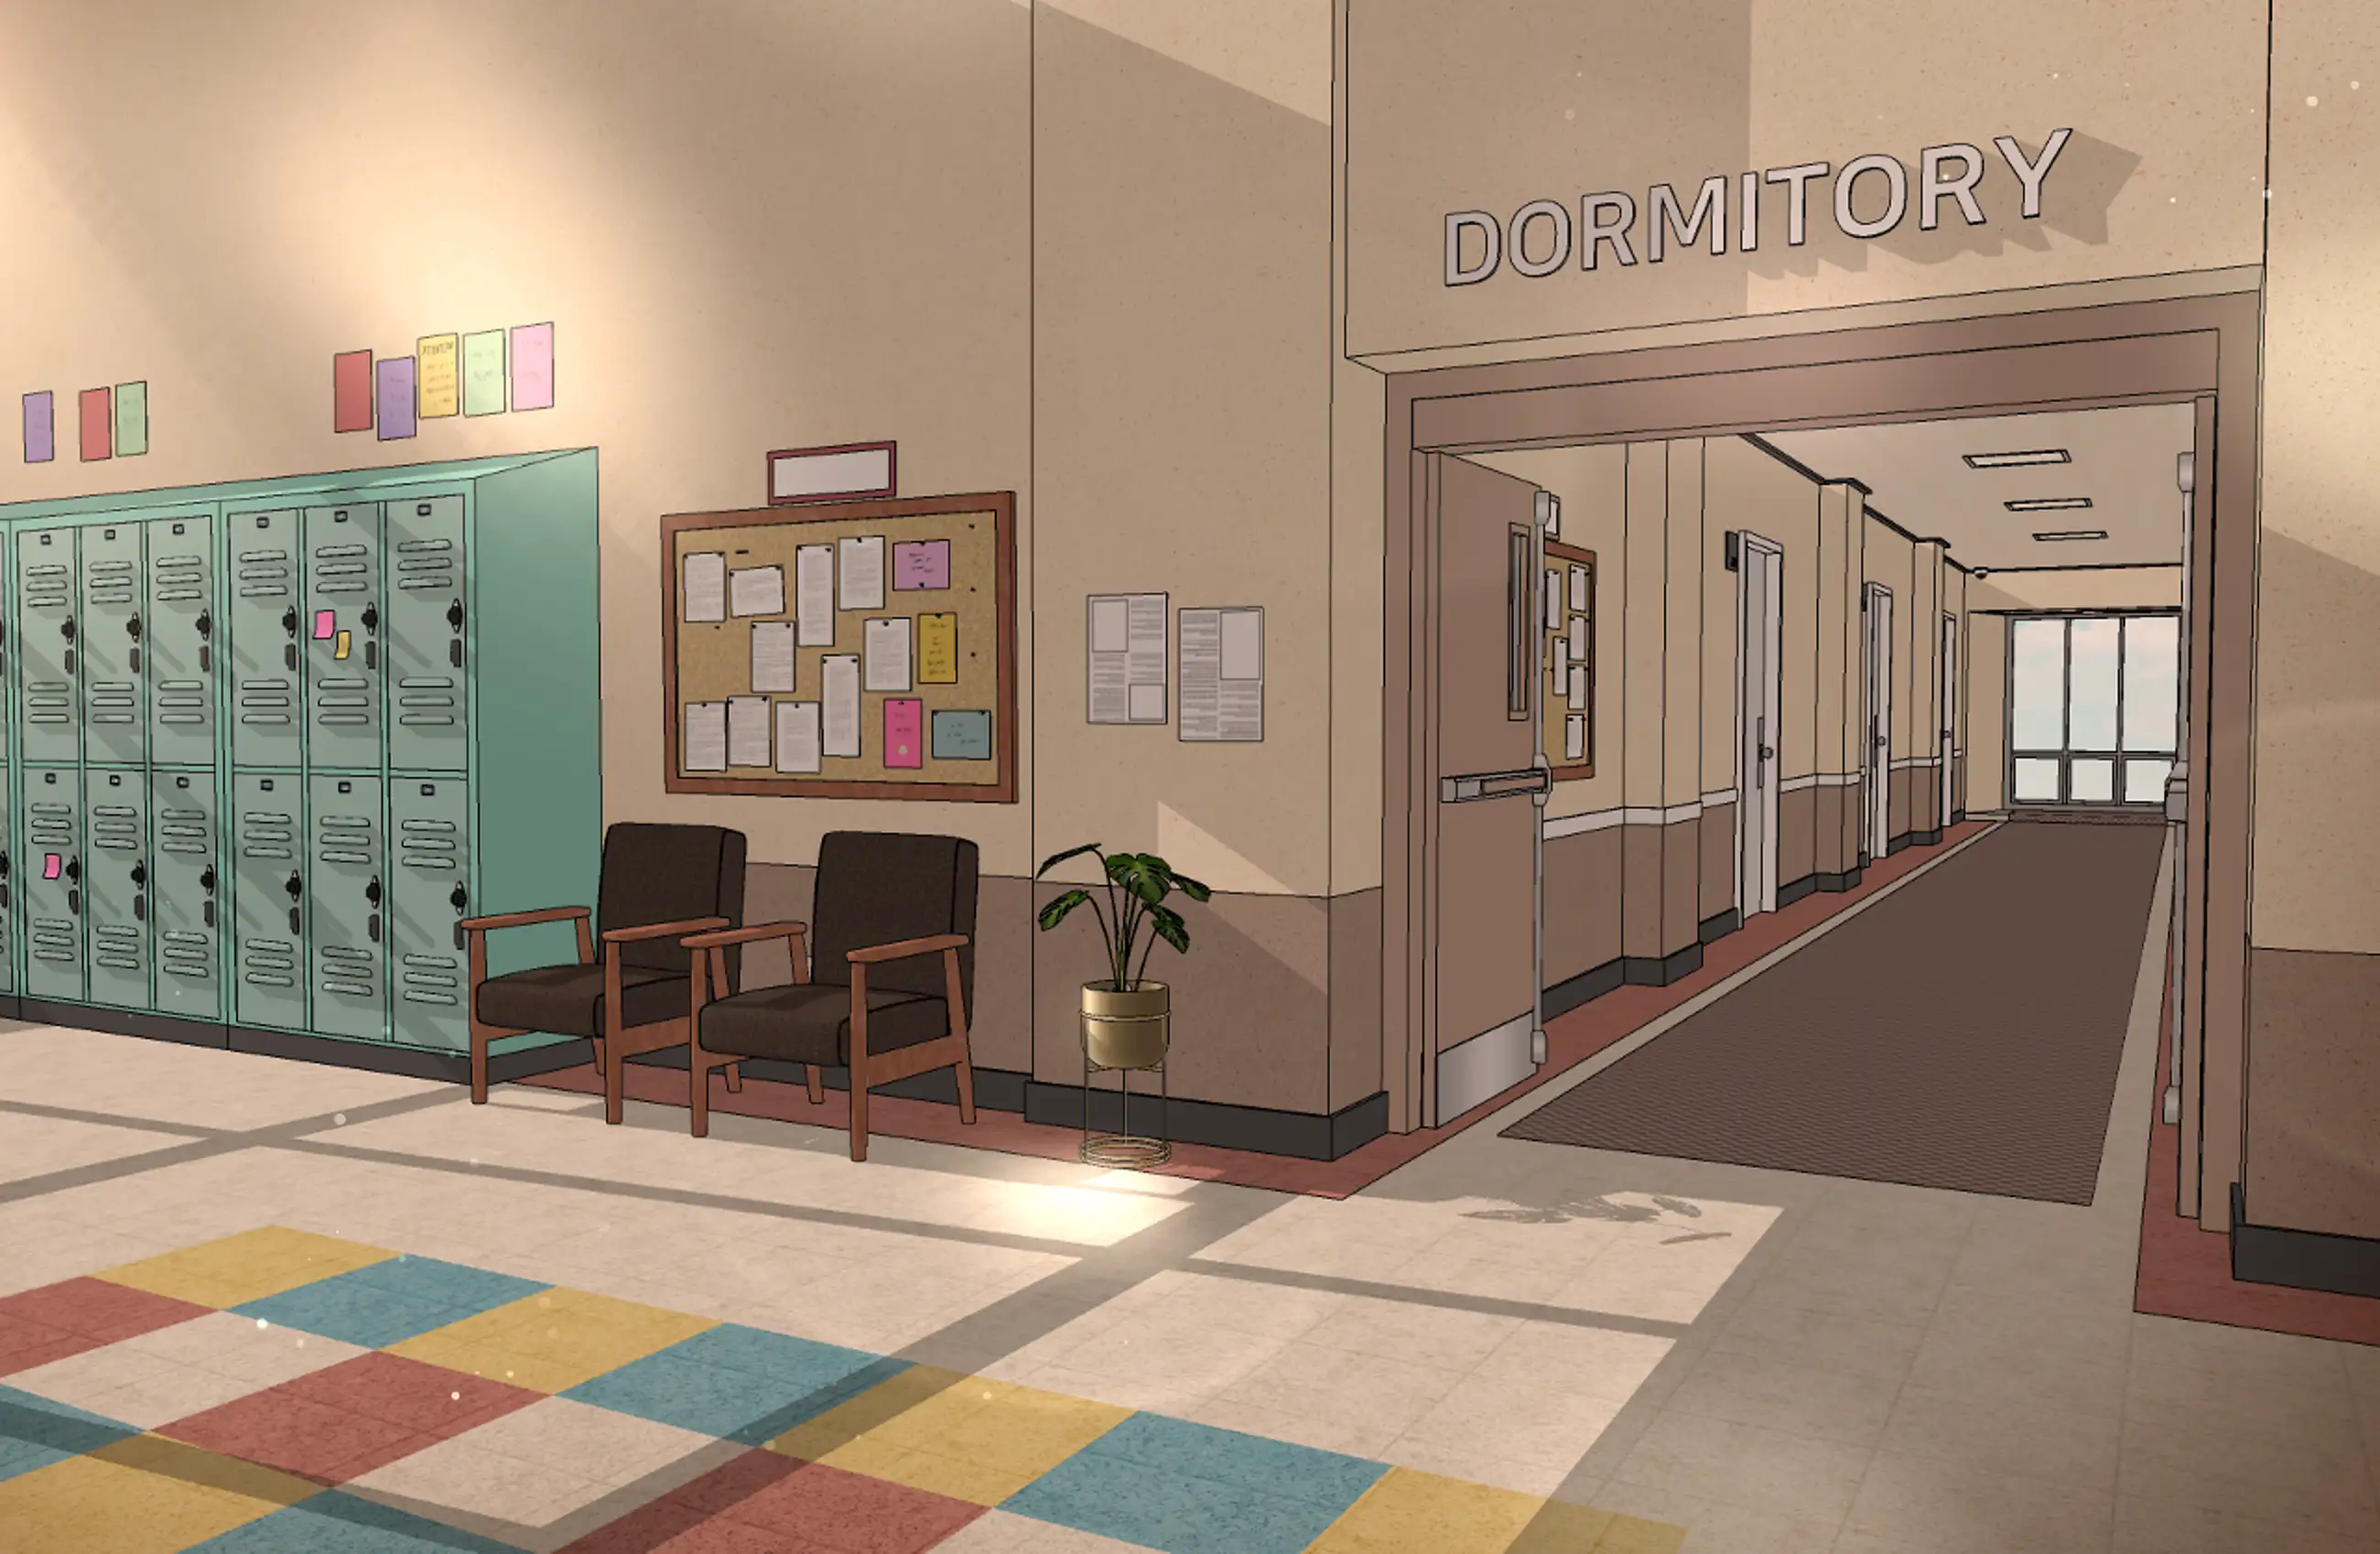 Hallways of American school dormitories